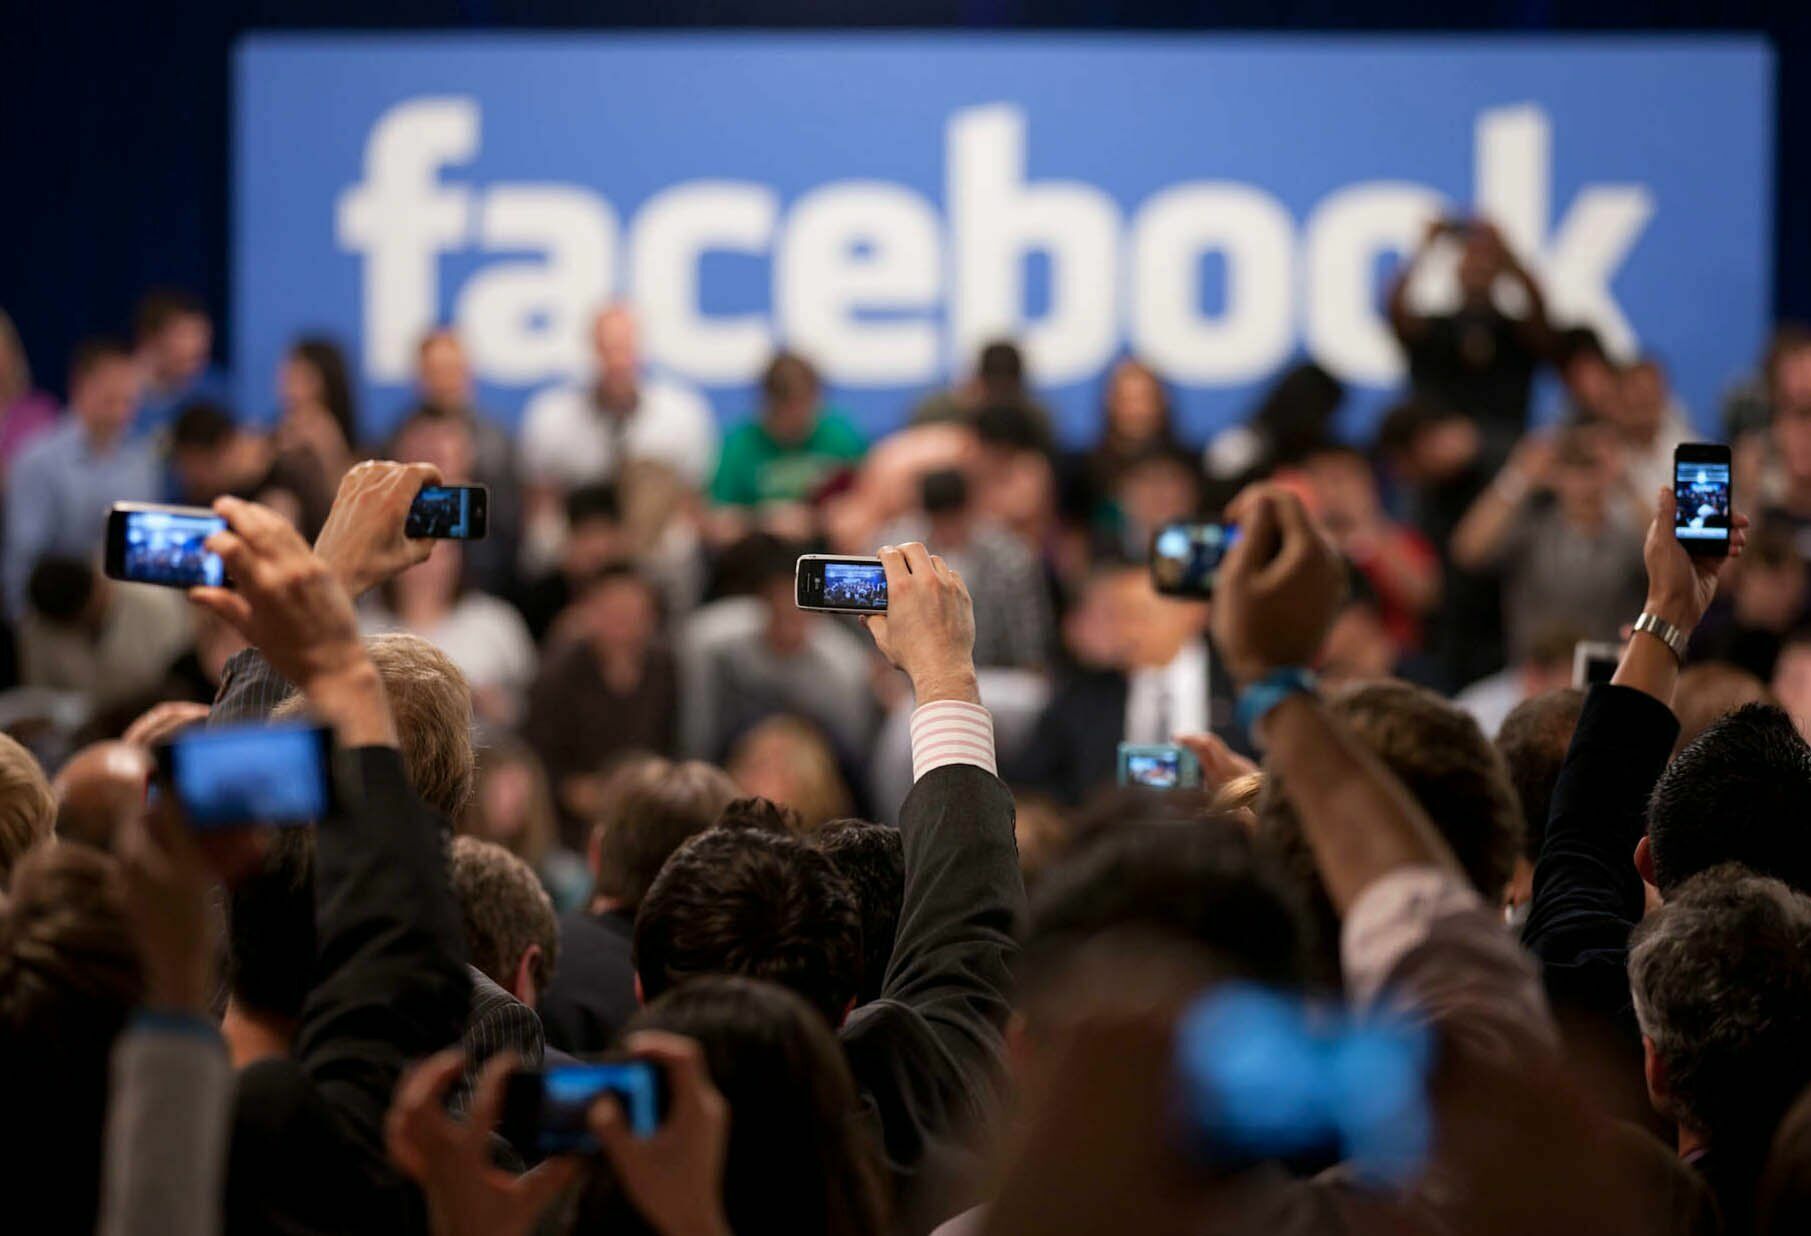 Минюст США планирует начать расследование против Facebook